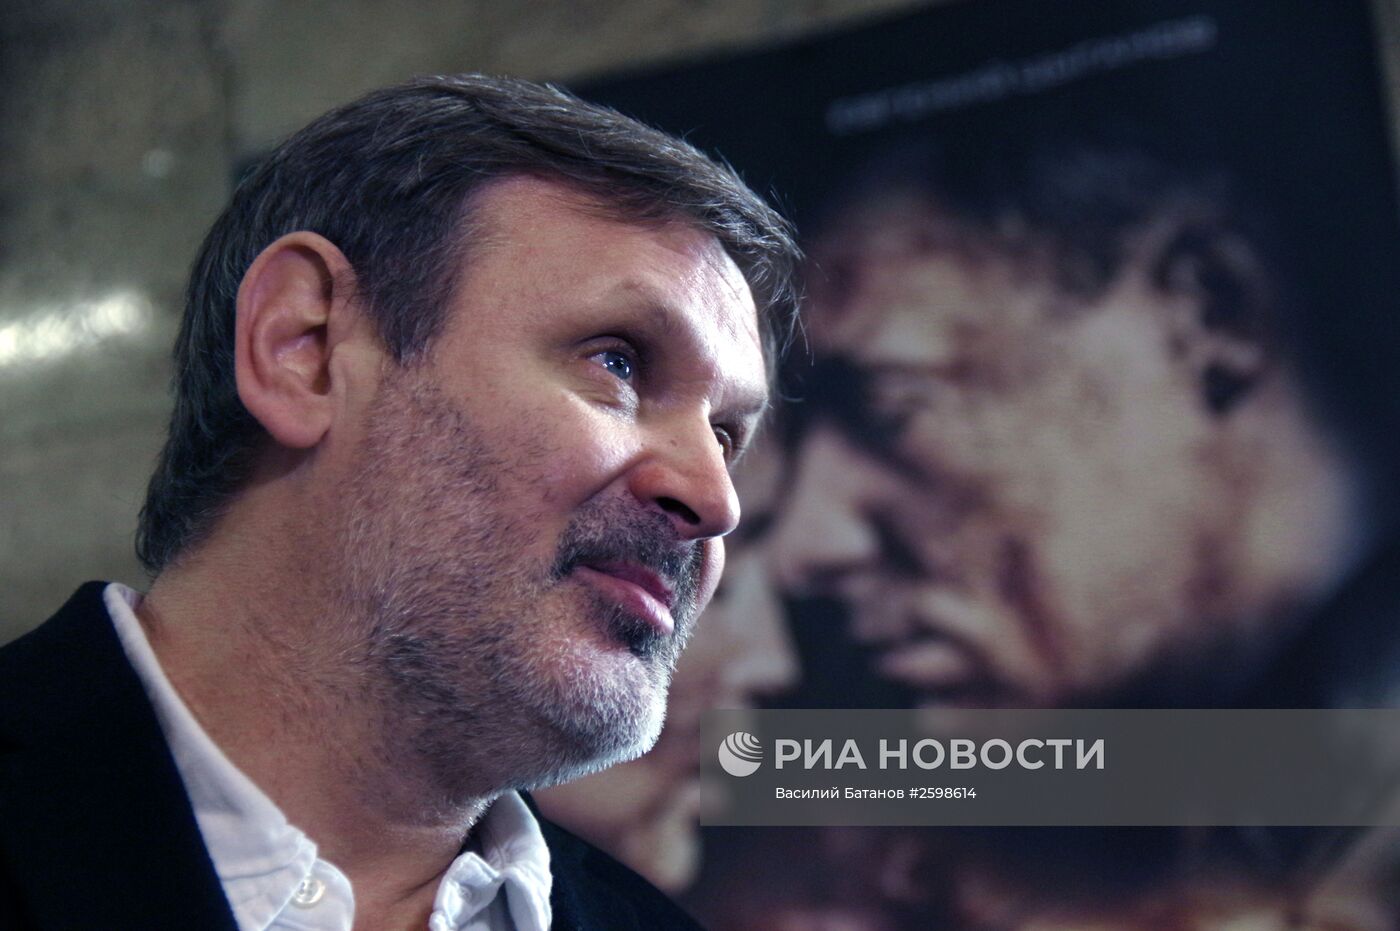 Презентация фильма "Битва за Севастополь" в Севастополе